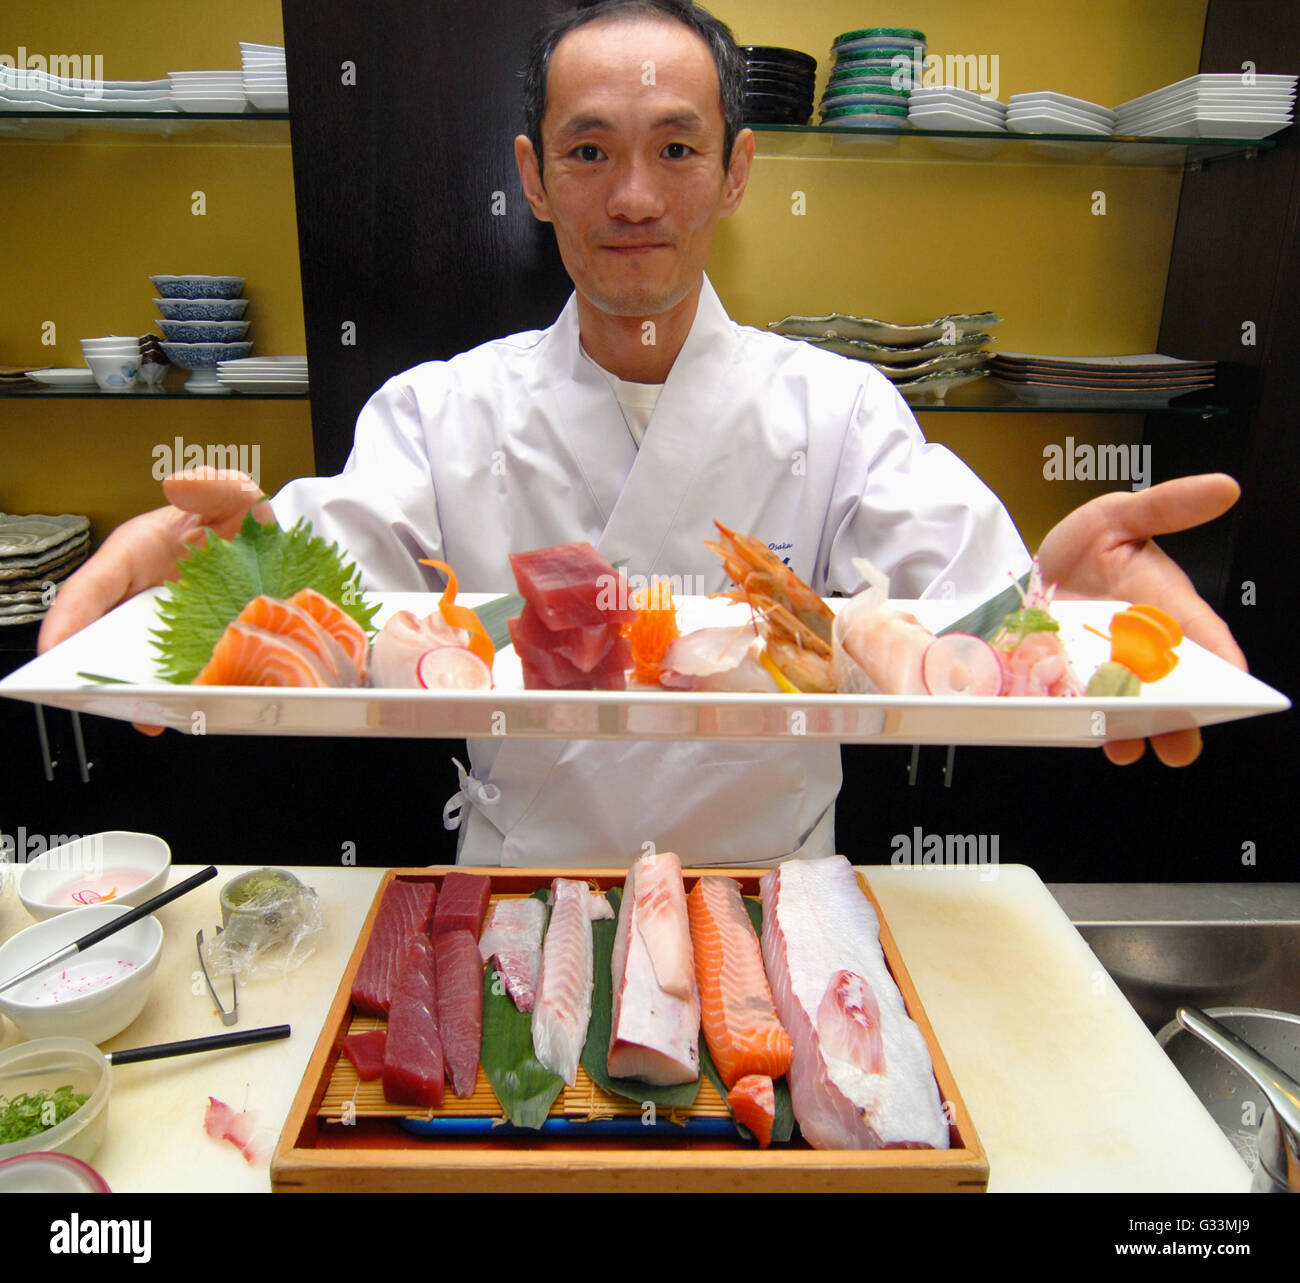 Matsuri Festival 2014 - die berühmten japanischen Chef Osamu Ikeda, engagiert bei der Vorbereitung einer Platte von Sashimi. Mailand, Italien, Stockfoto